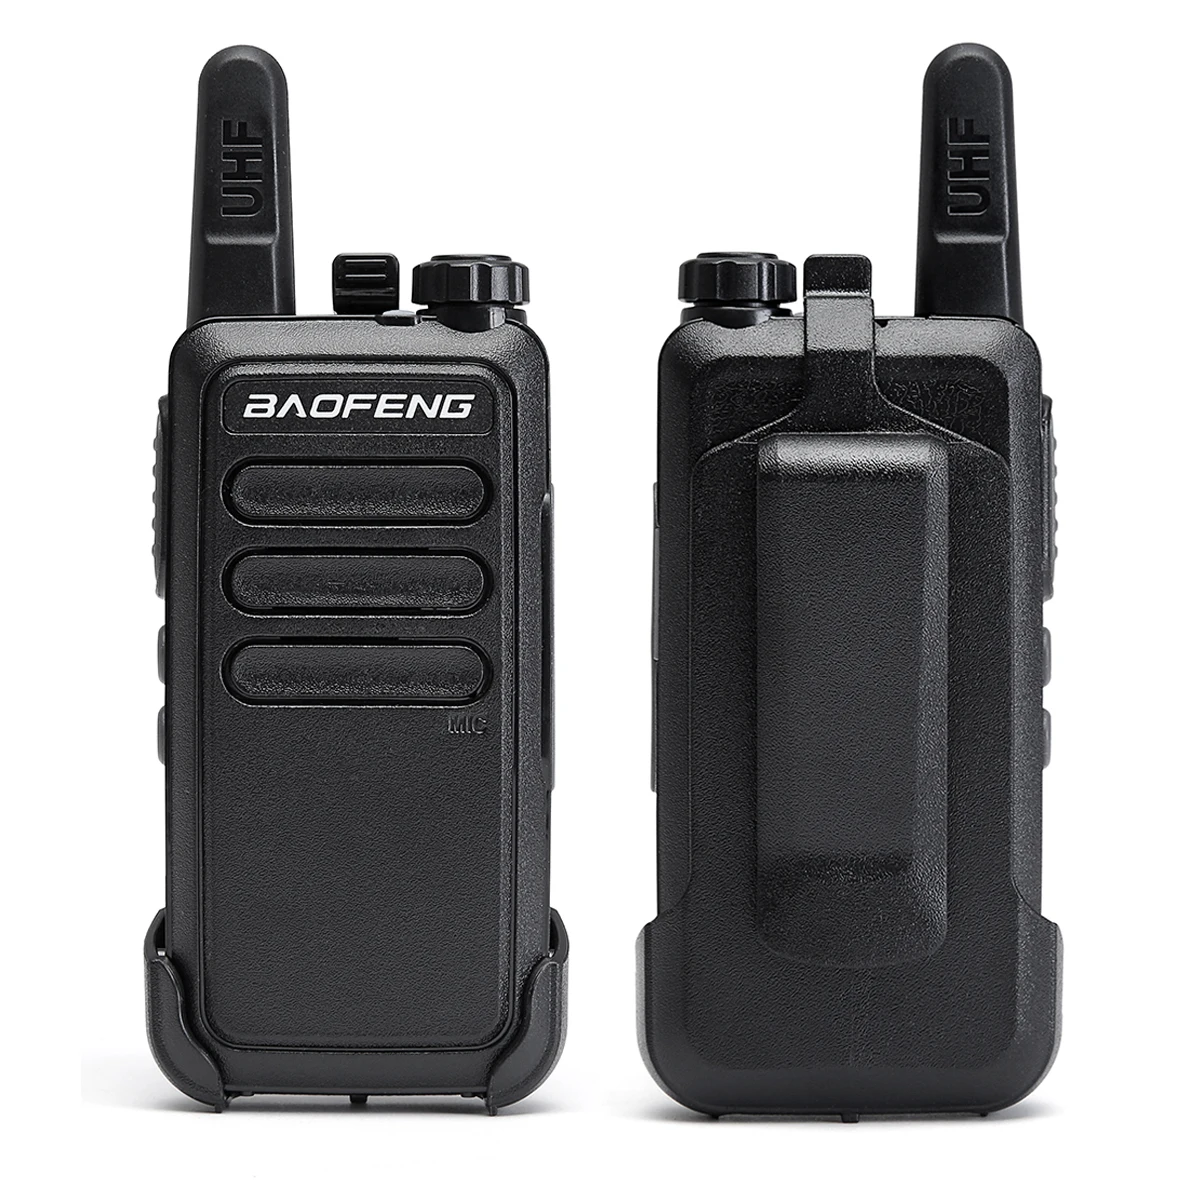 Baofeng BF-C9 мини-рация 400-470 МГц UHF двухстороннее радио портативный VOX usb зарядка портативный приемопередатчик вверх BF-888S bf888s